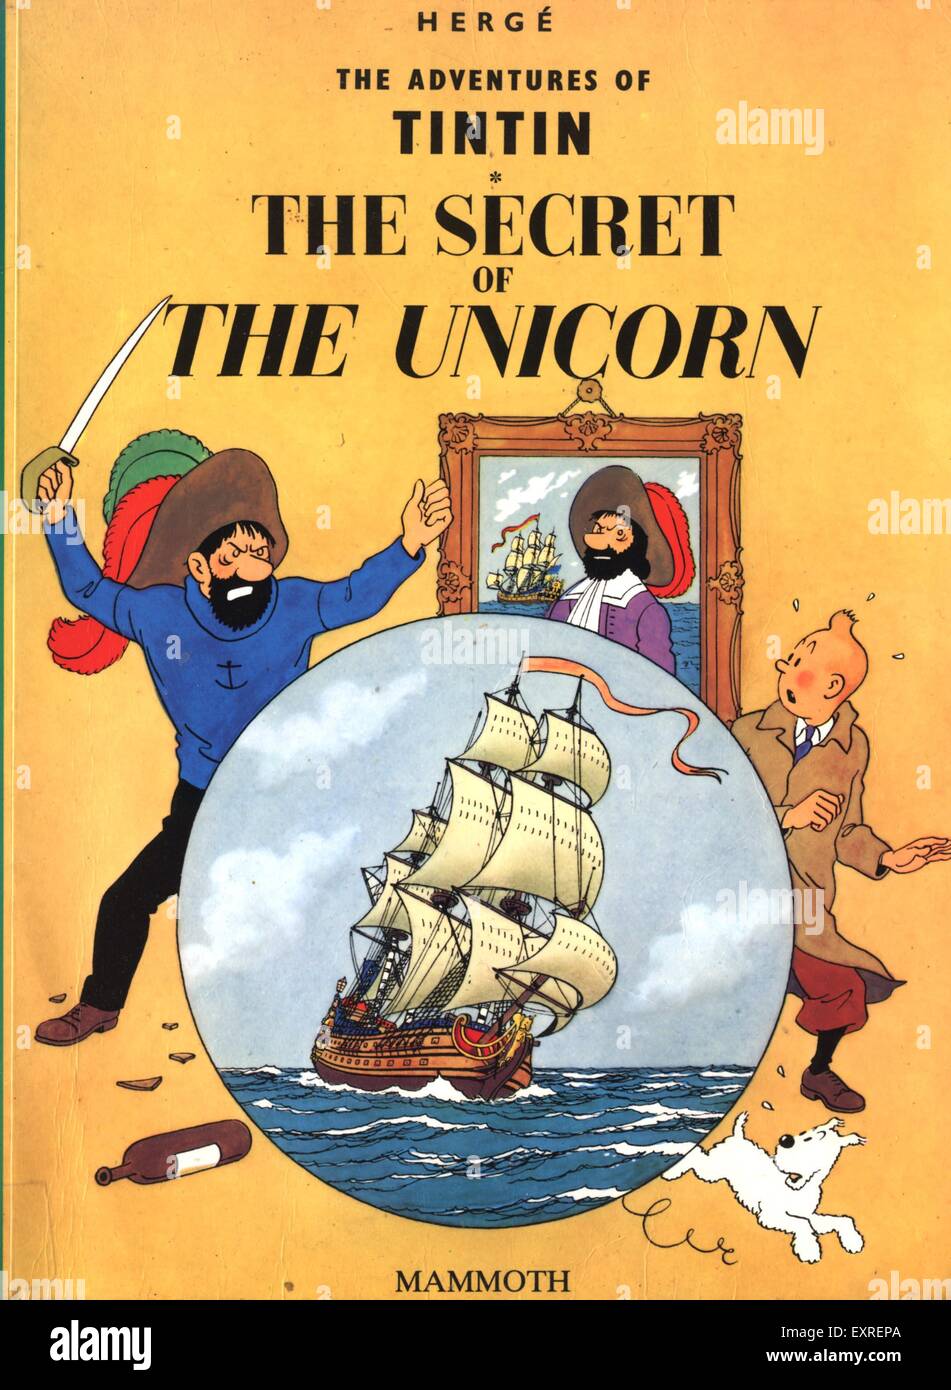 Tintin comic immagini e fotografie stock ad alta risoluzione - Alamy